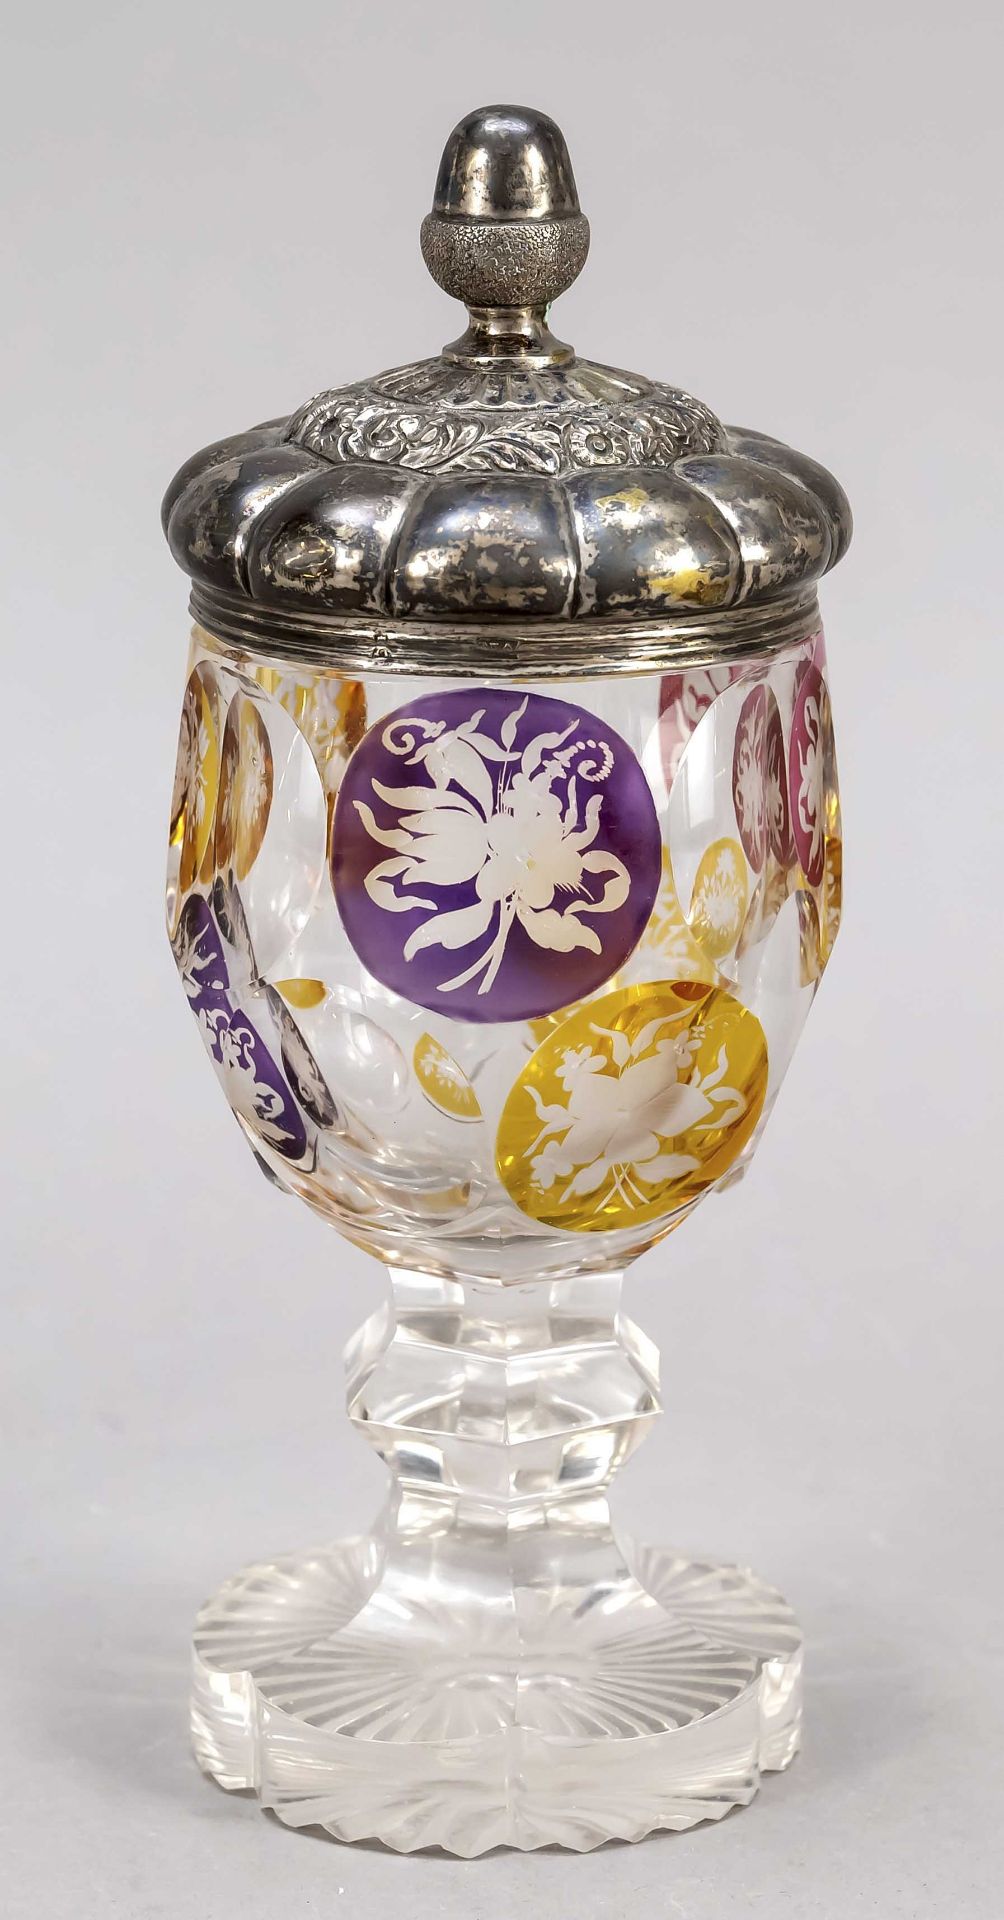 Goblet glass with silver lid, German, 19th century, hallmark Hamburg, MZ verschlagen, hallmarked